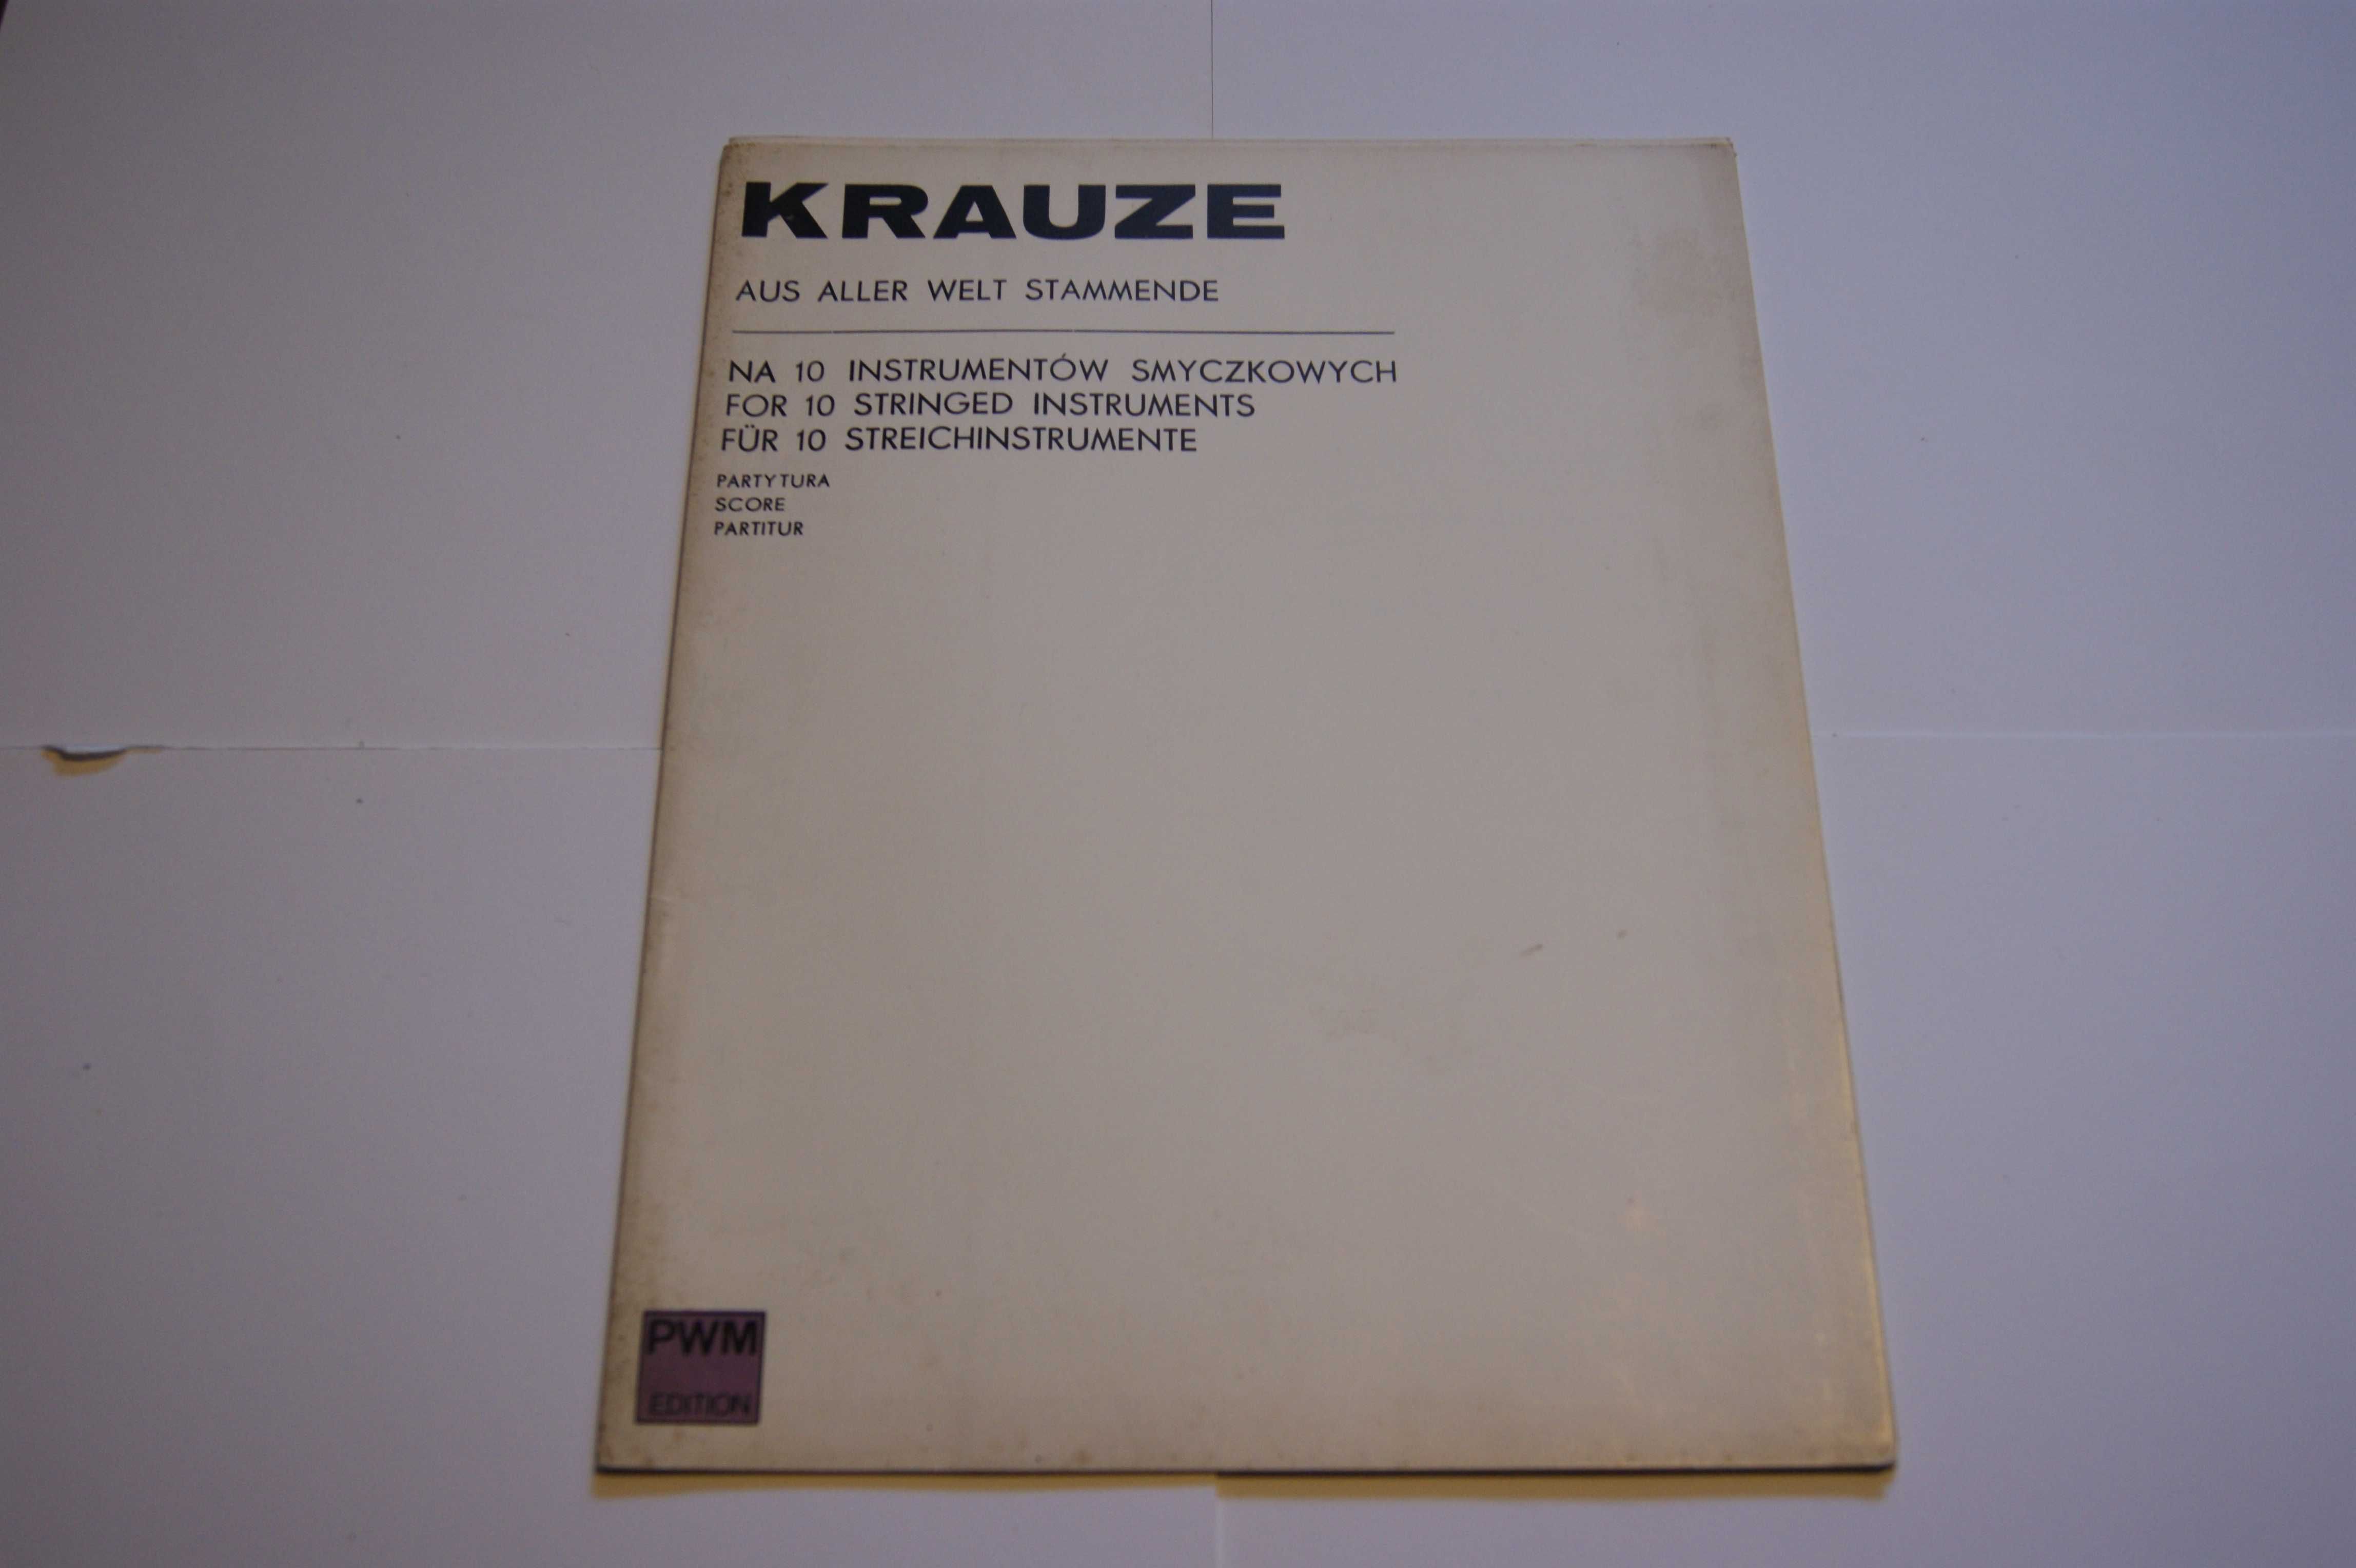 Zygmunt Krauze – Aus Aller Welt Stammende